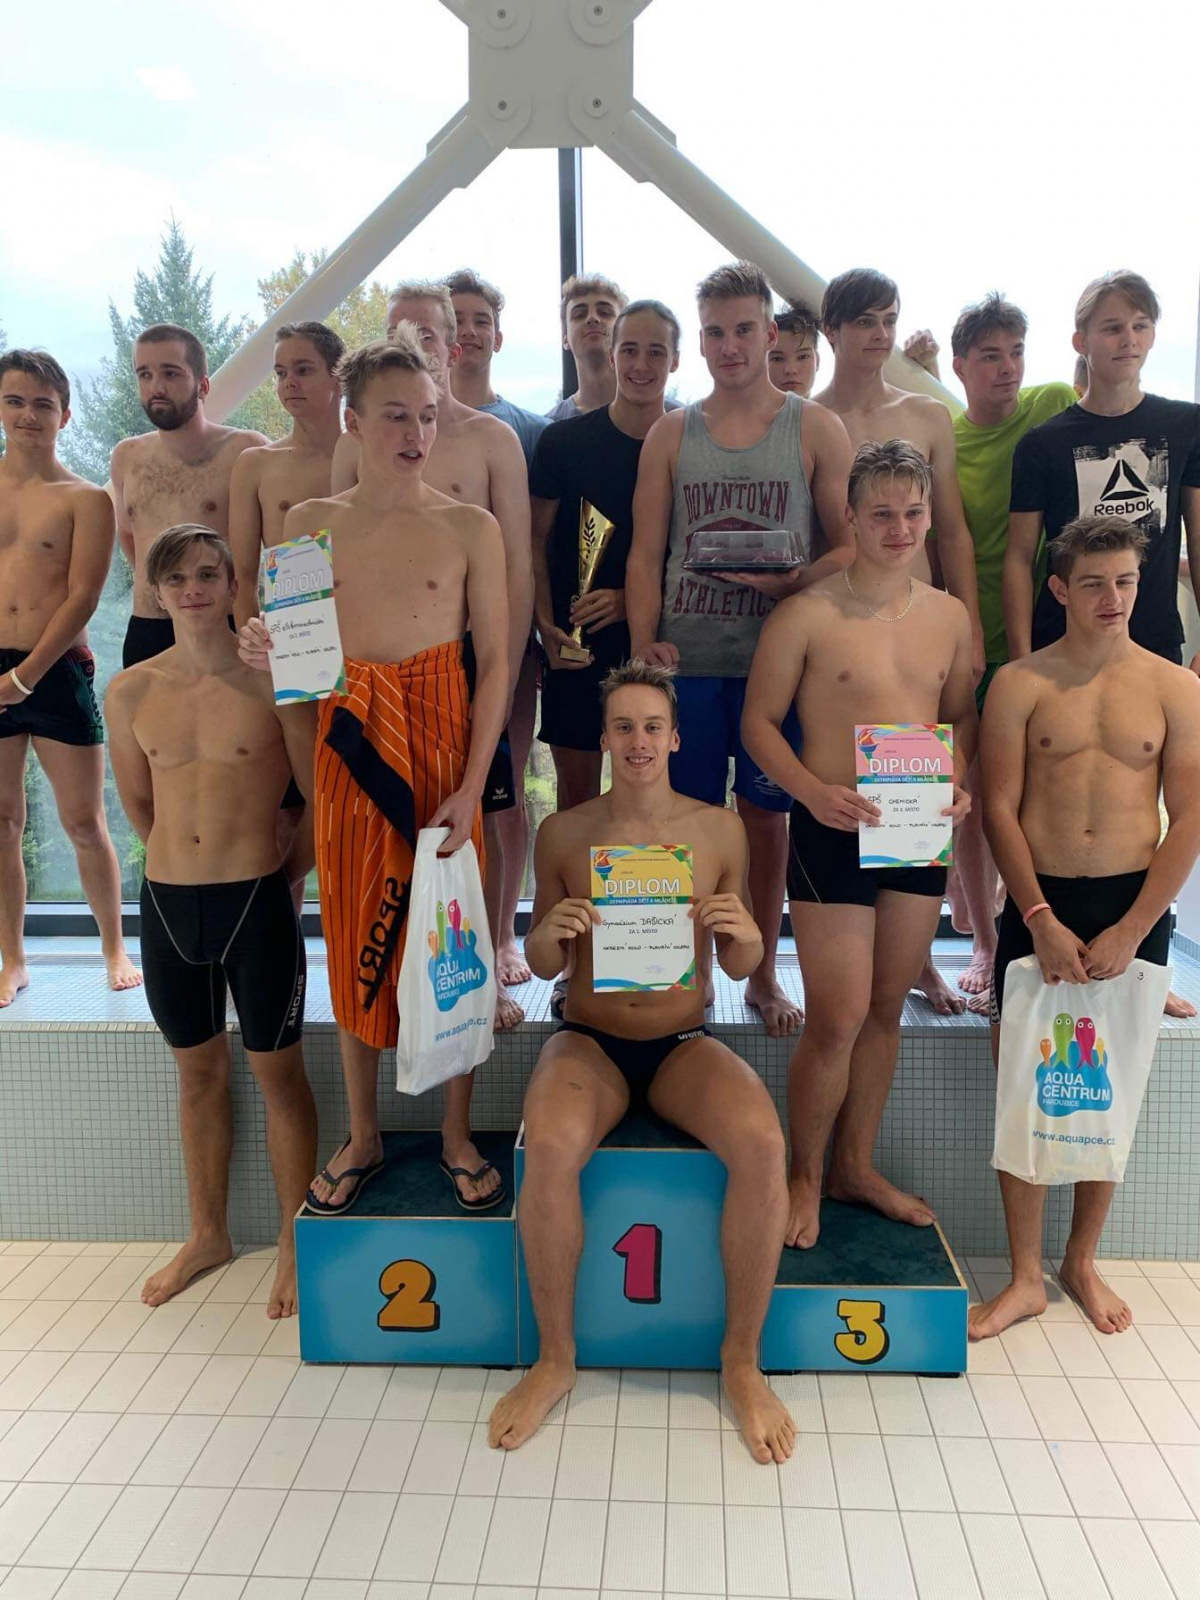 okresní kolo soutěže středních škol v plavání: tým chlapců